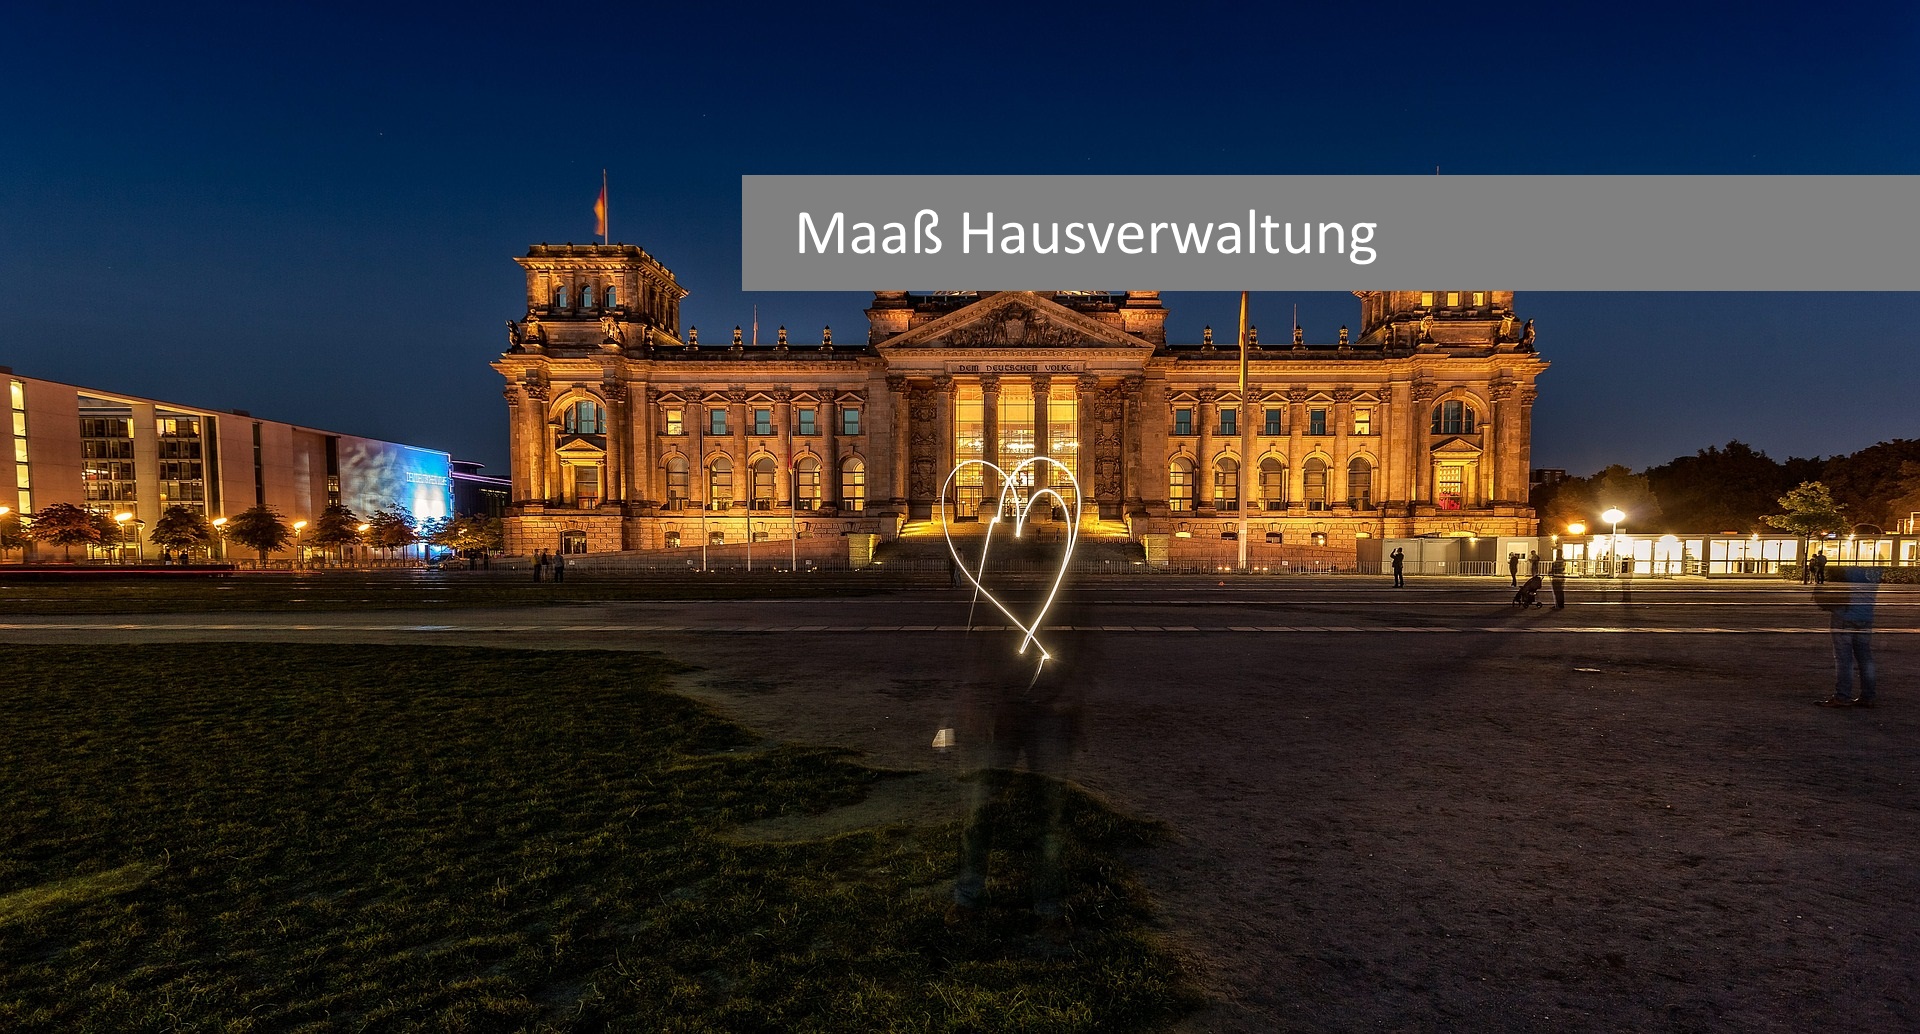 (c) Maass-hausverwaltung.de